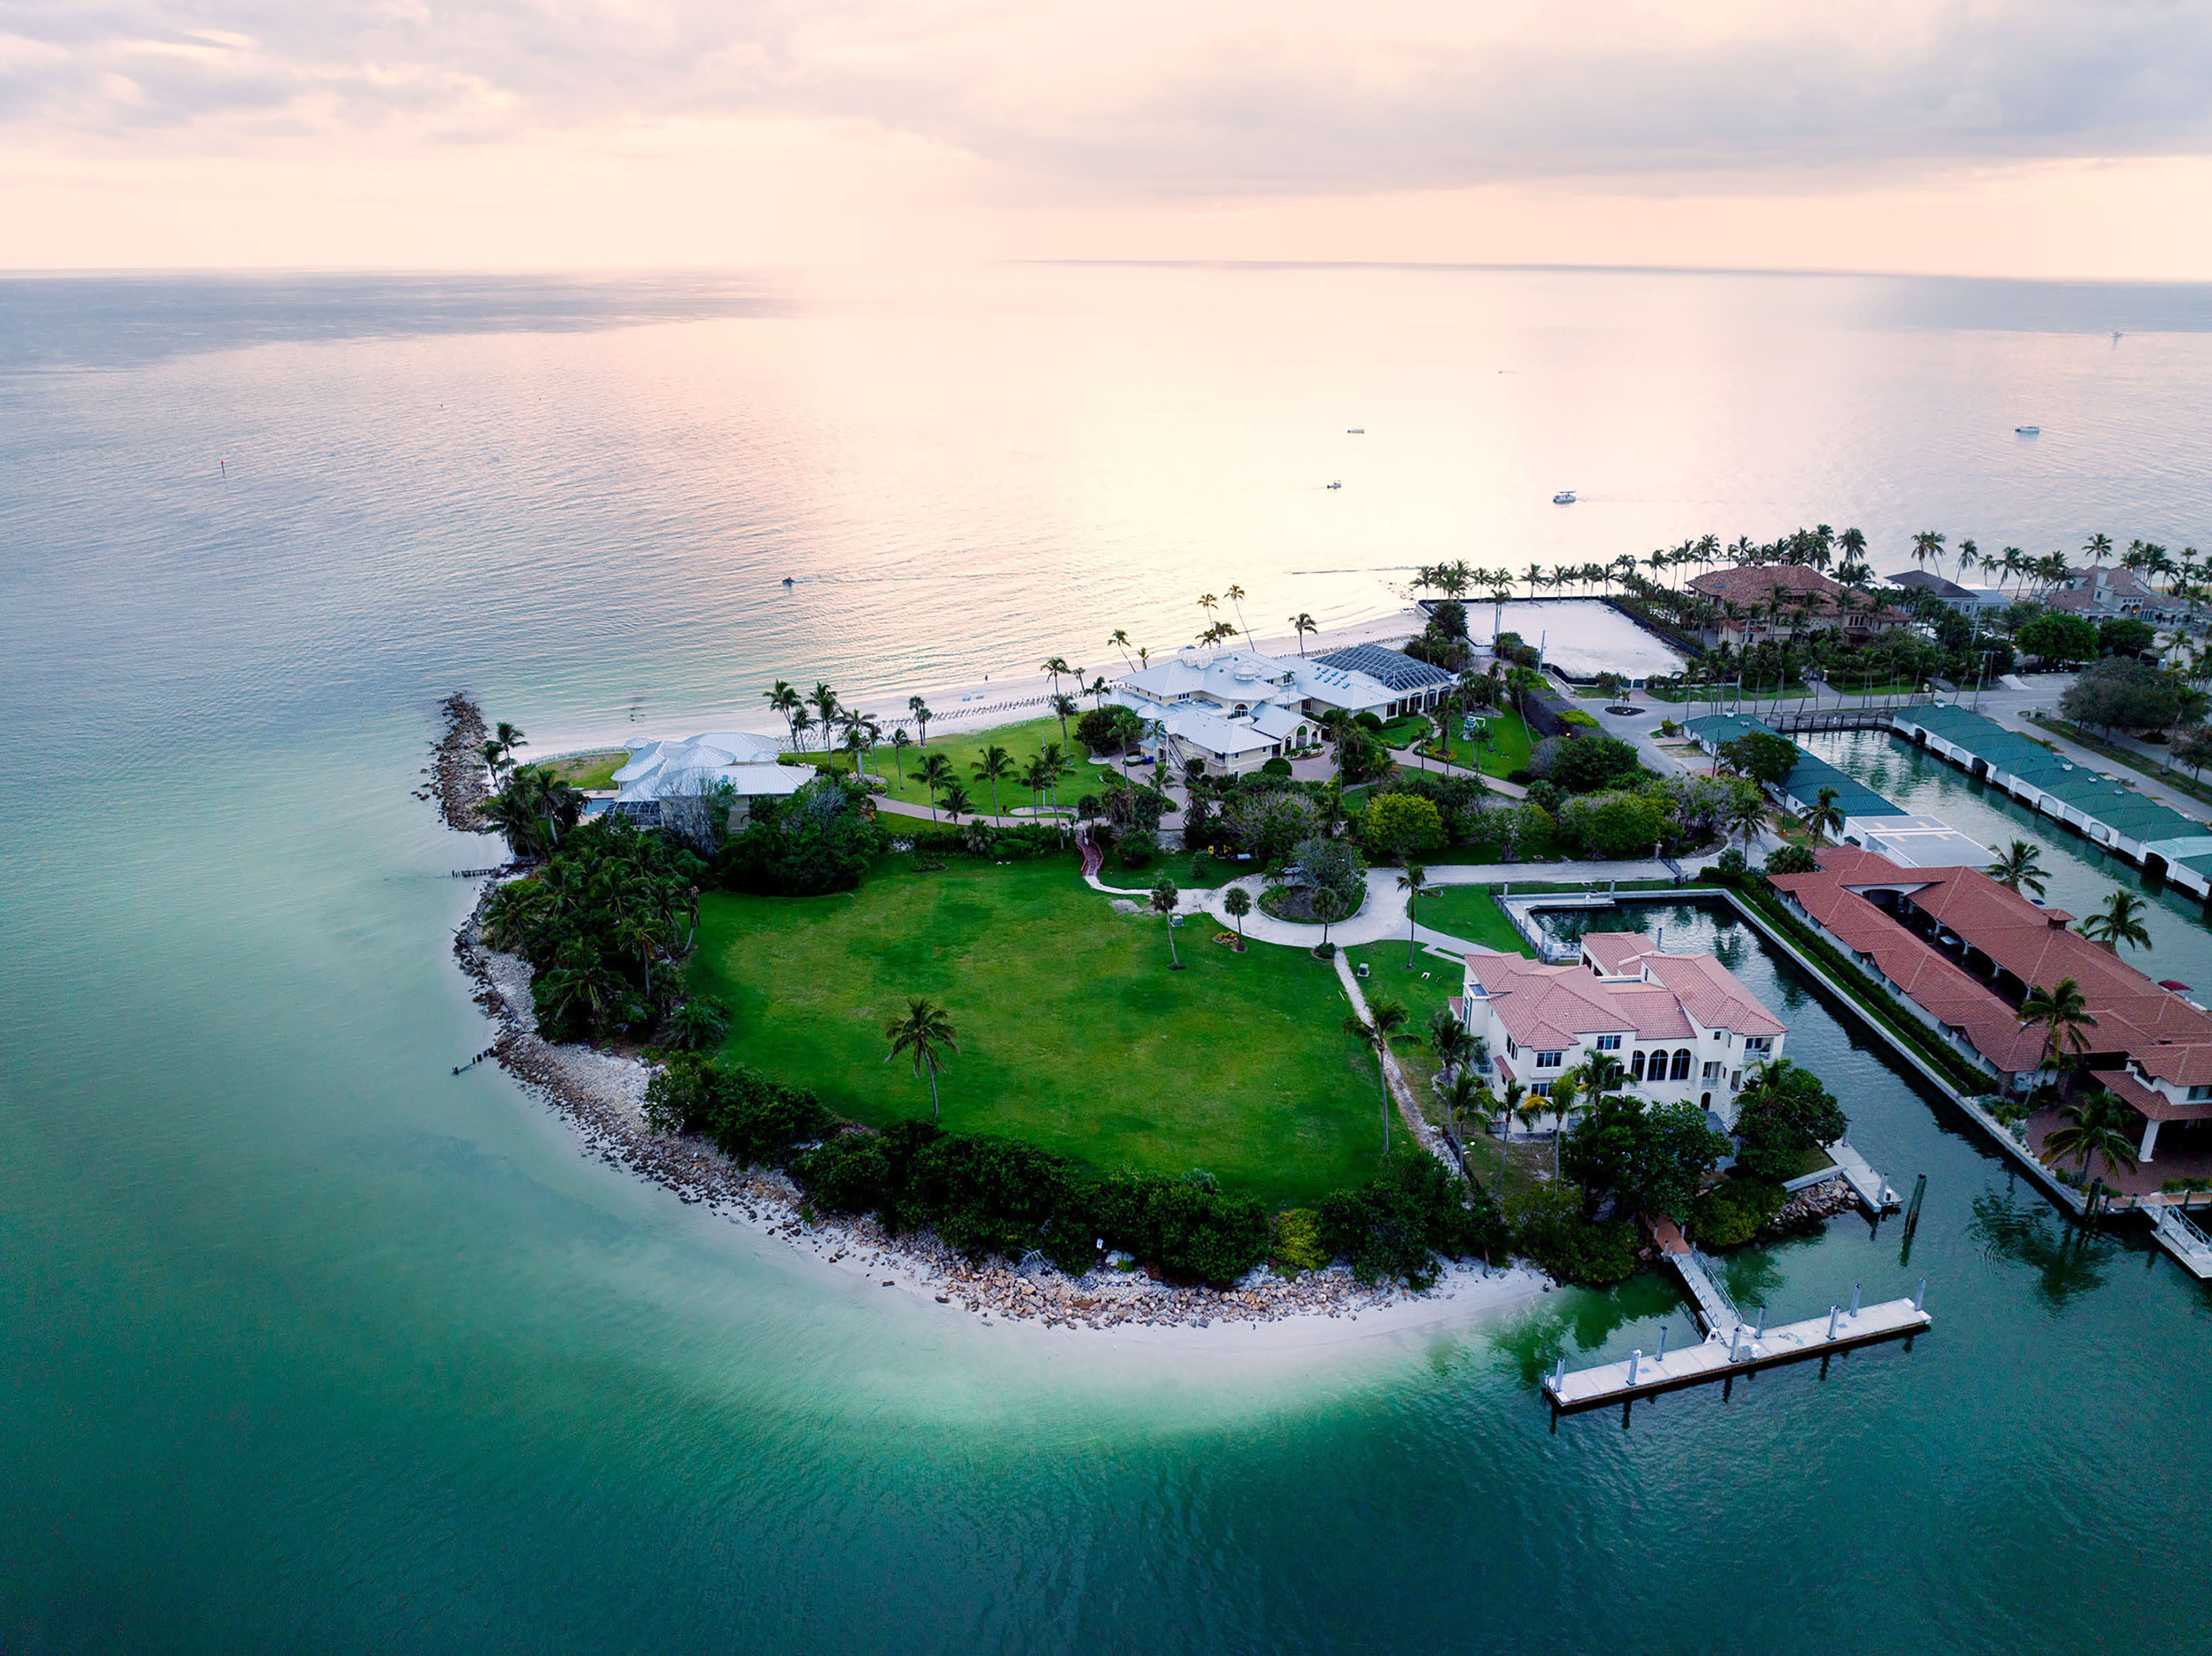 La villa in Florida è la casa più costosa in vendita negli Stati Uniti, al prezzo di 295 milioni di dollari